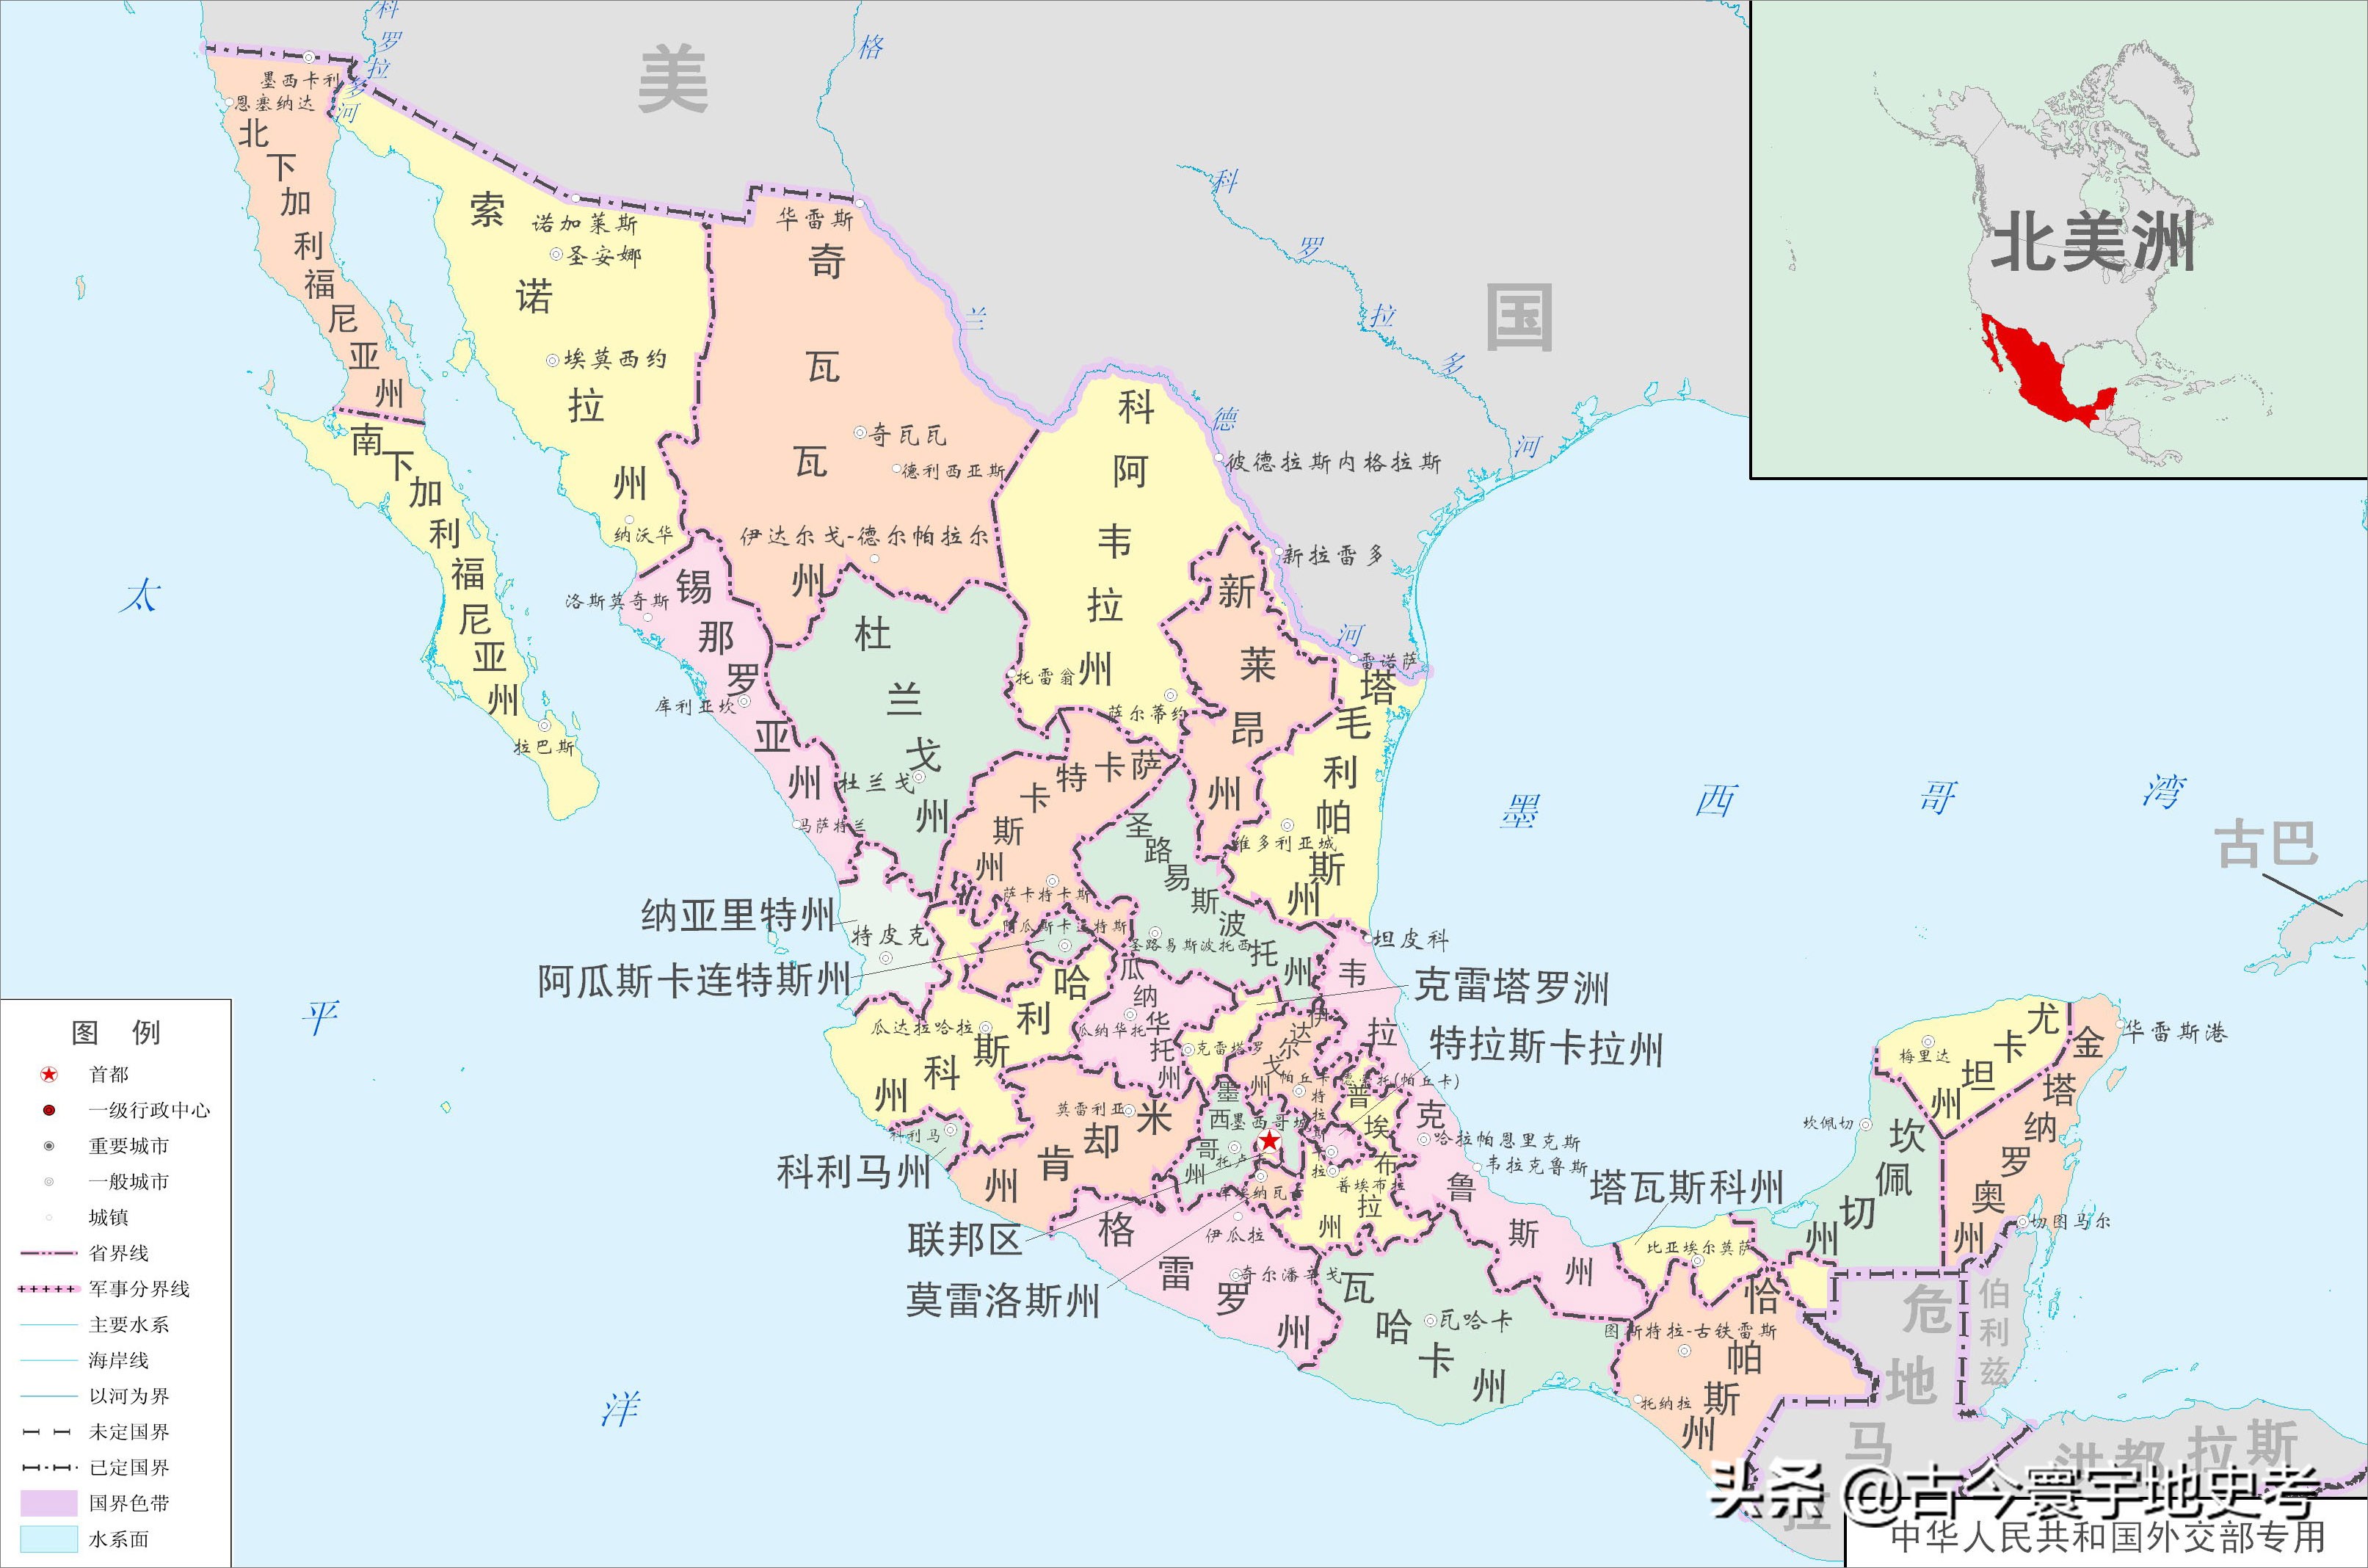 南美地图(北美洲、南美洲和大洋洲各国行政区划图)